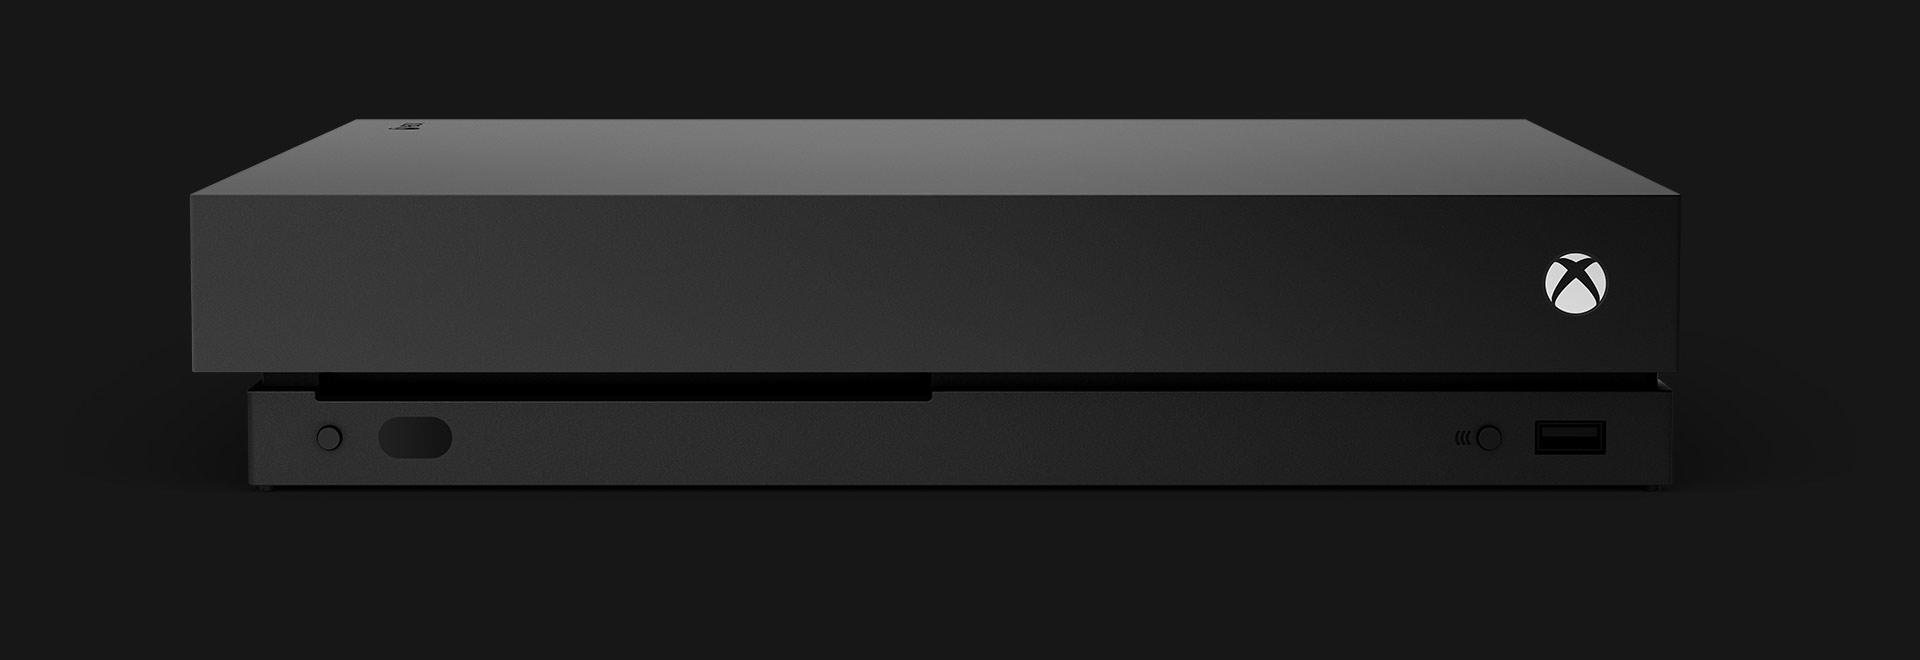 Vista frontal de uma consola Xbox One X.